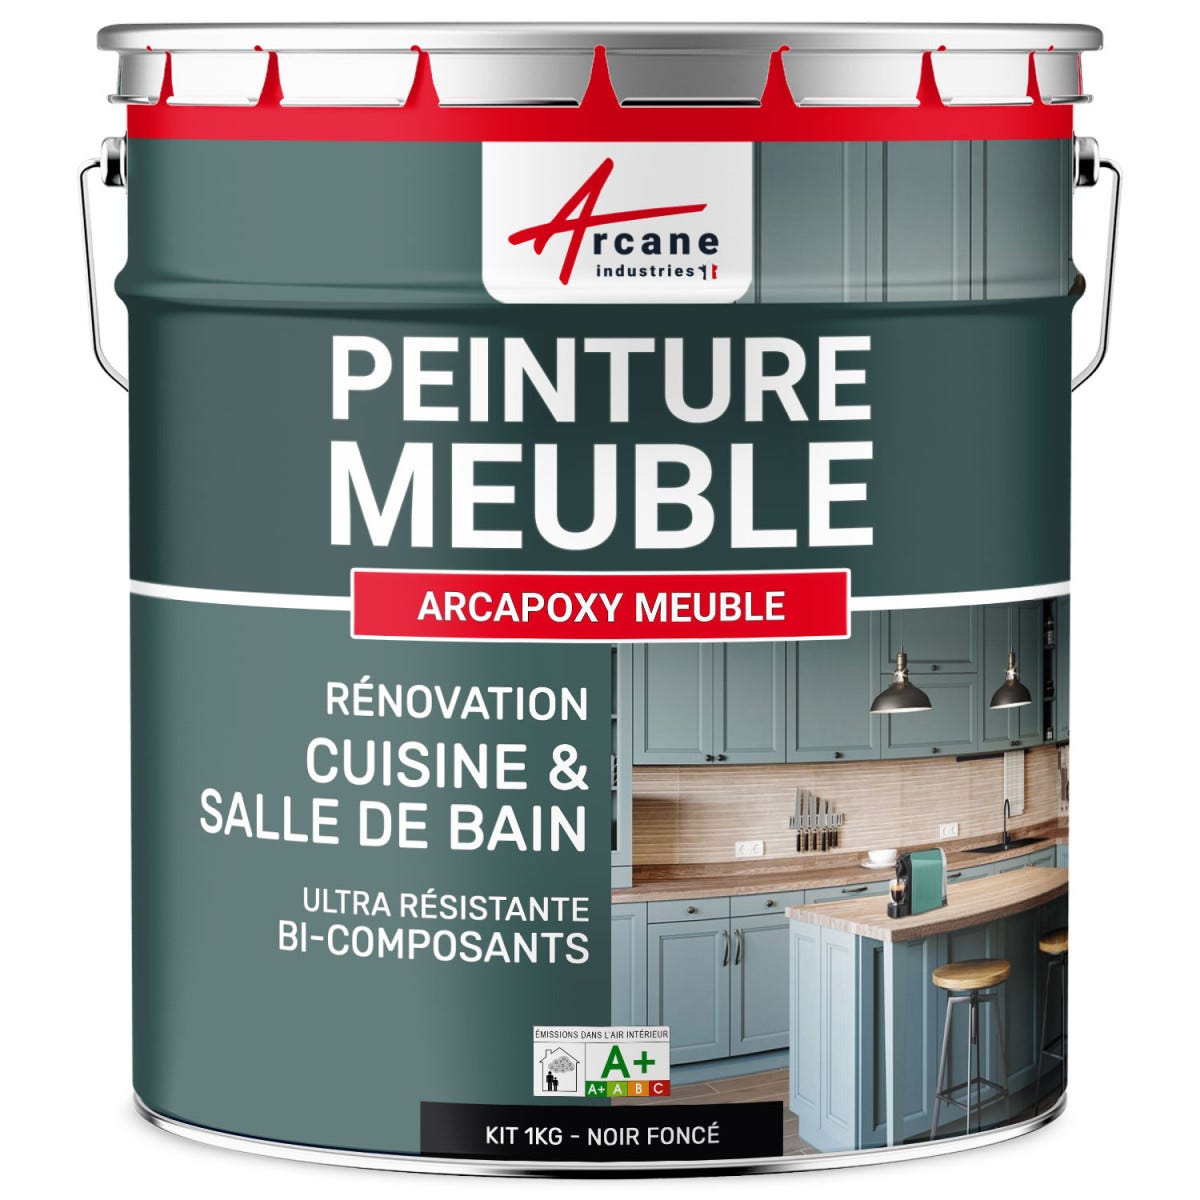 Peinture Meuble Cuisine, Salle de Bain - ARCAPOXY MEUBLE - 1 kg (jusqu'à 12 m² en 2 couches) - Noir foncé - RAL 9005 - ARCANE INDUSTRIES 5